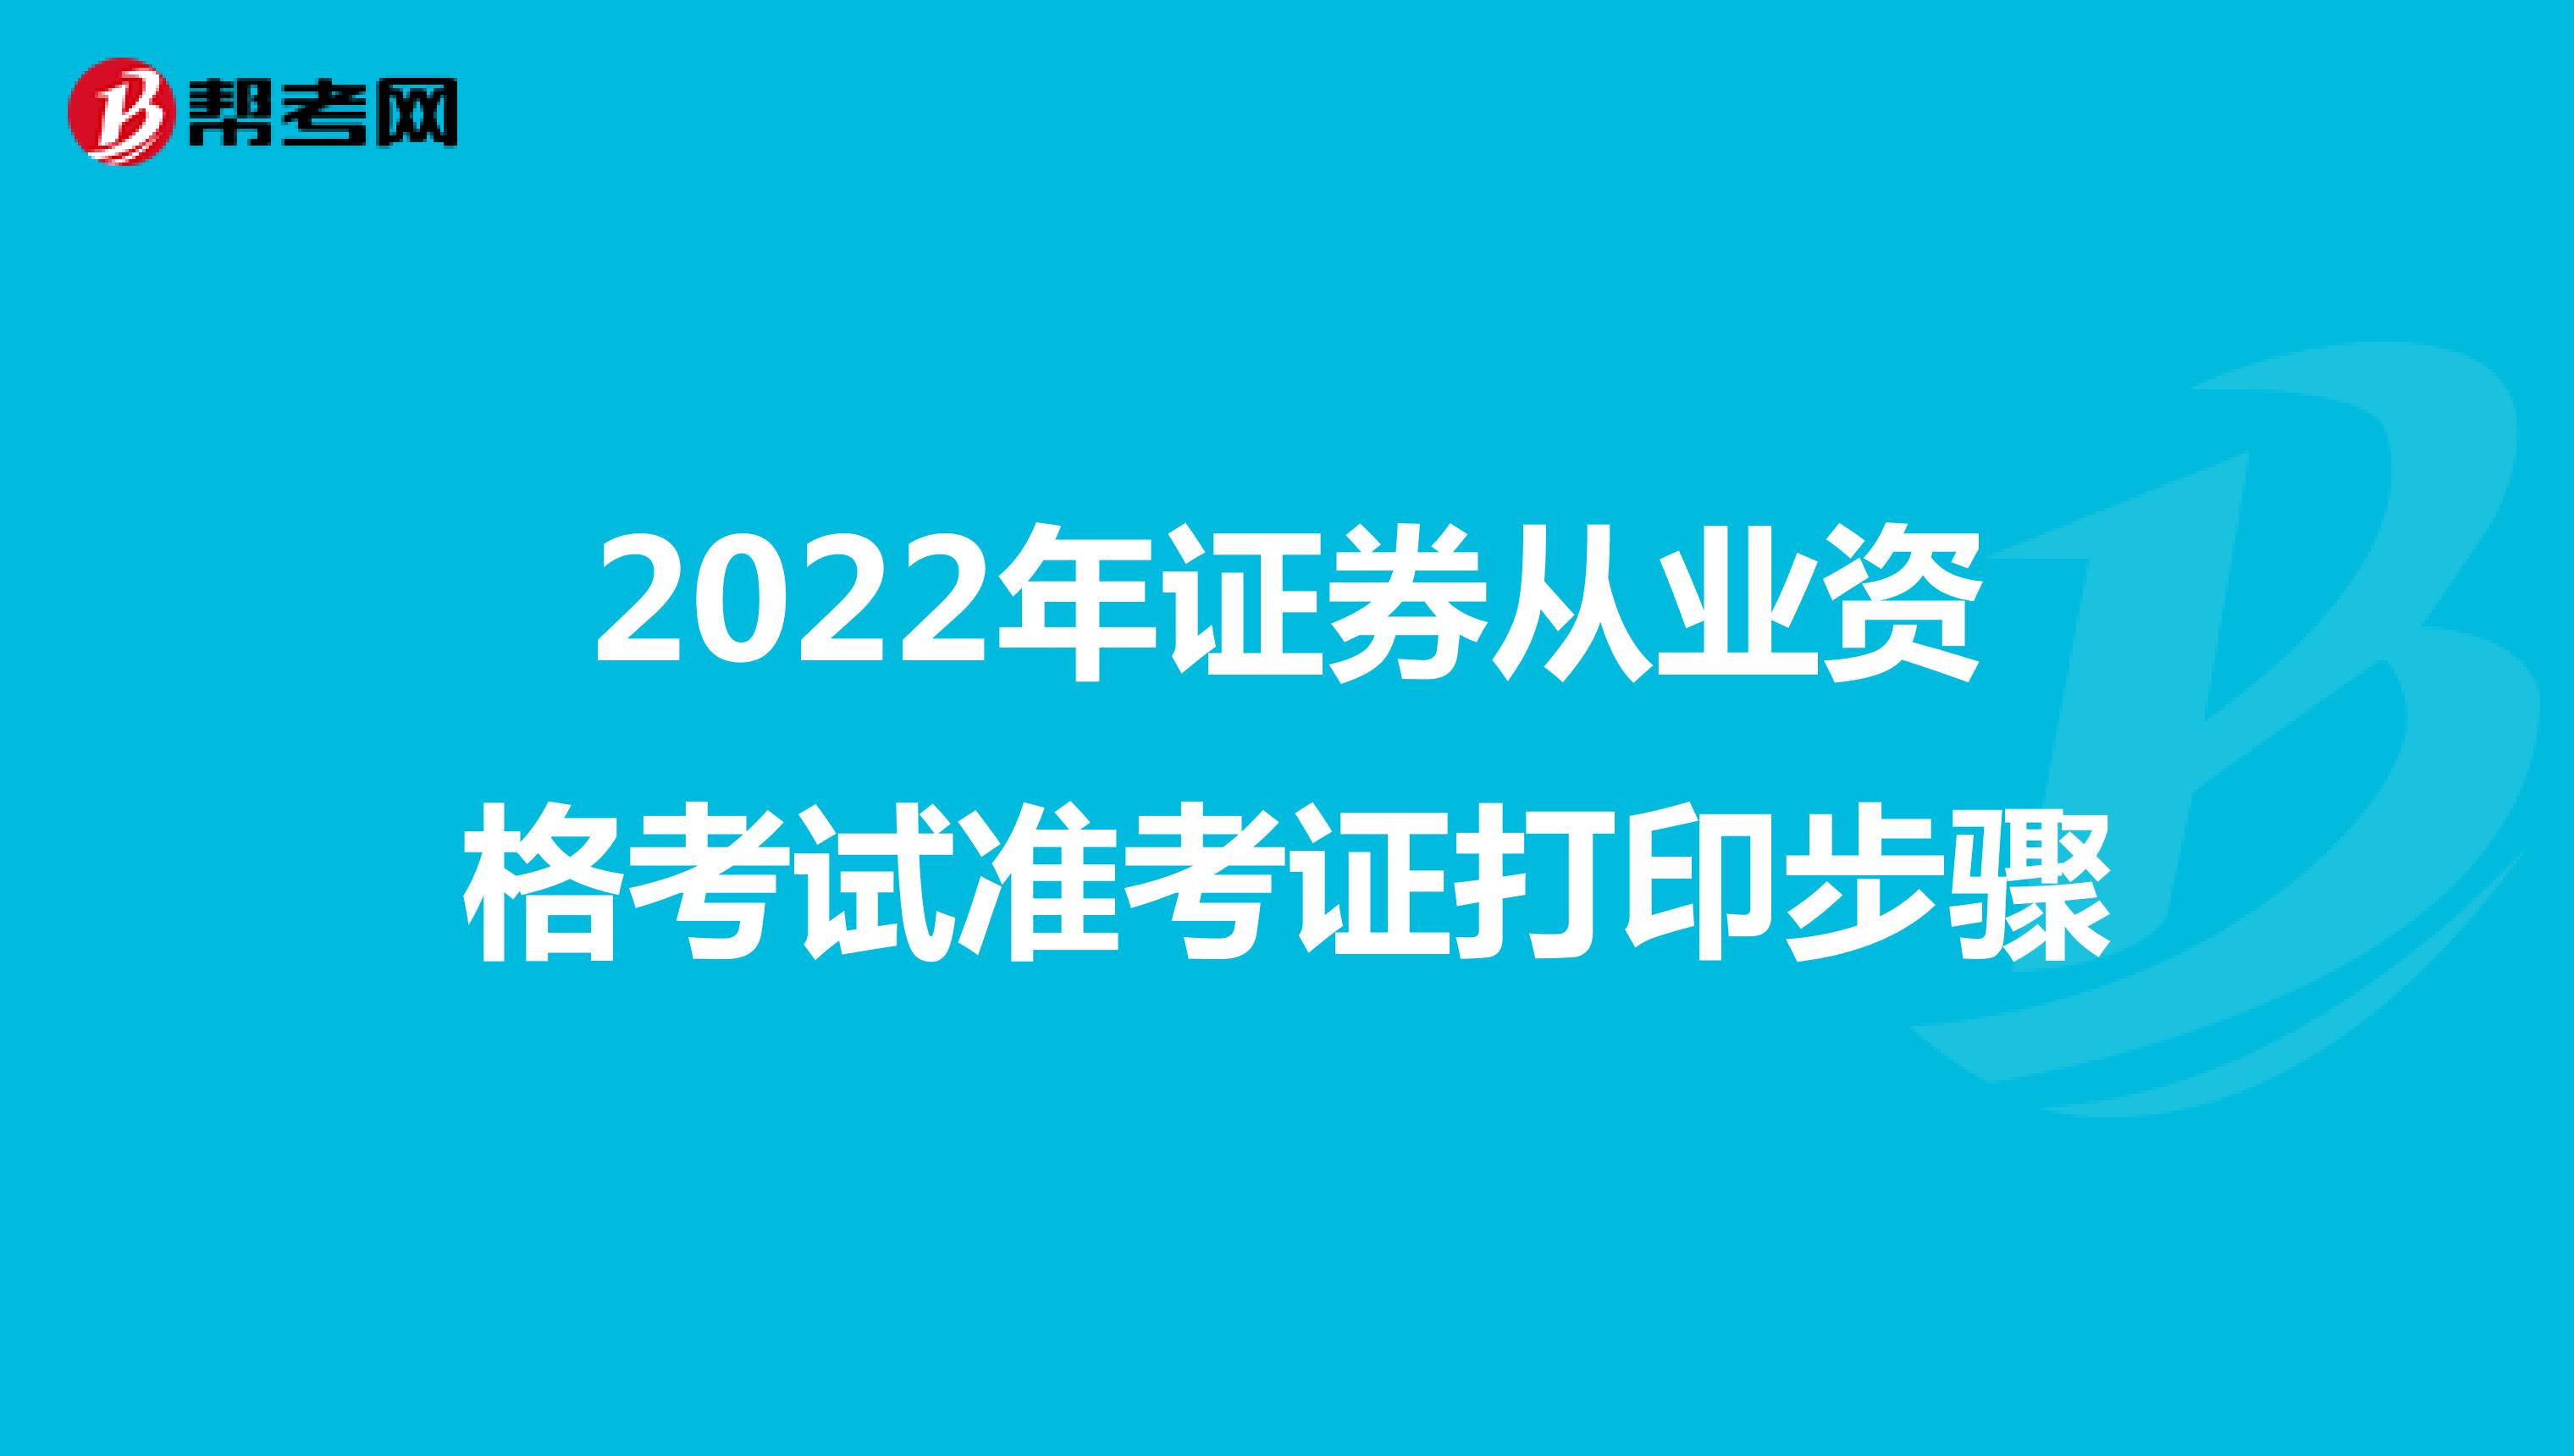 2022年证券从业资格考试准考证打印步骤